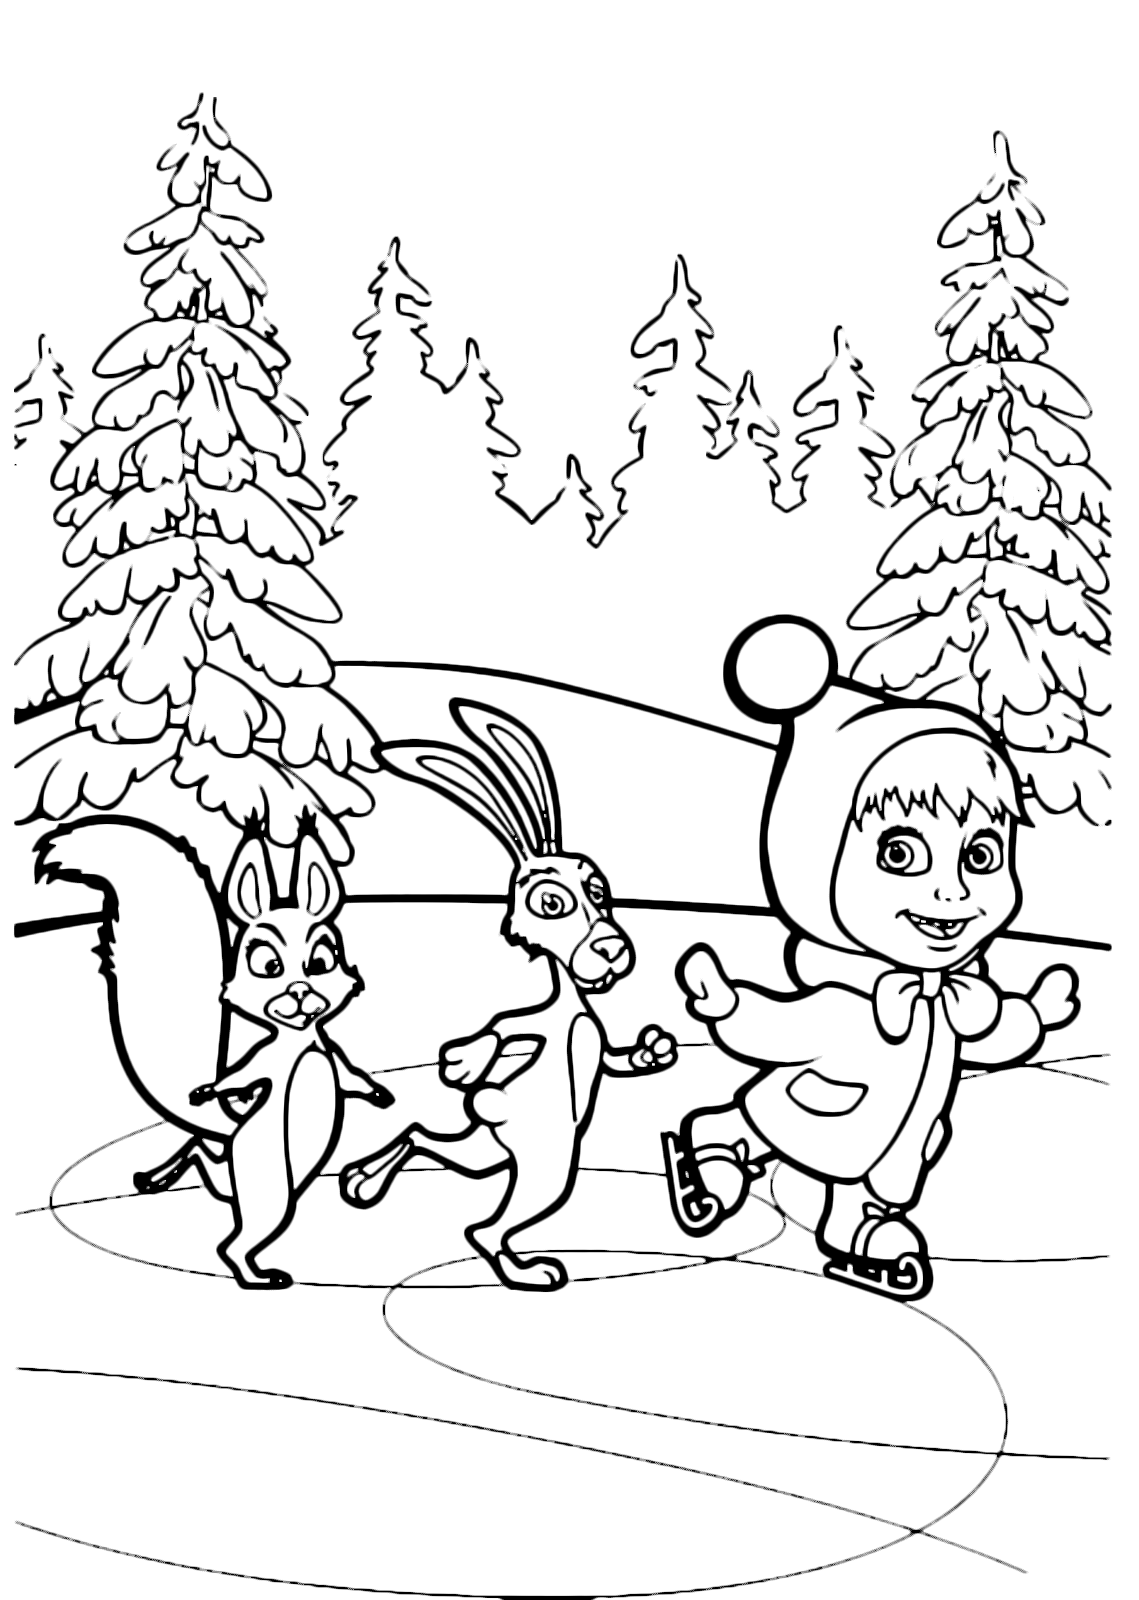 Masha e Orso - Masha pattina sul ghiaccio con coniglio e scoiattolo